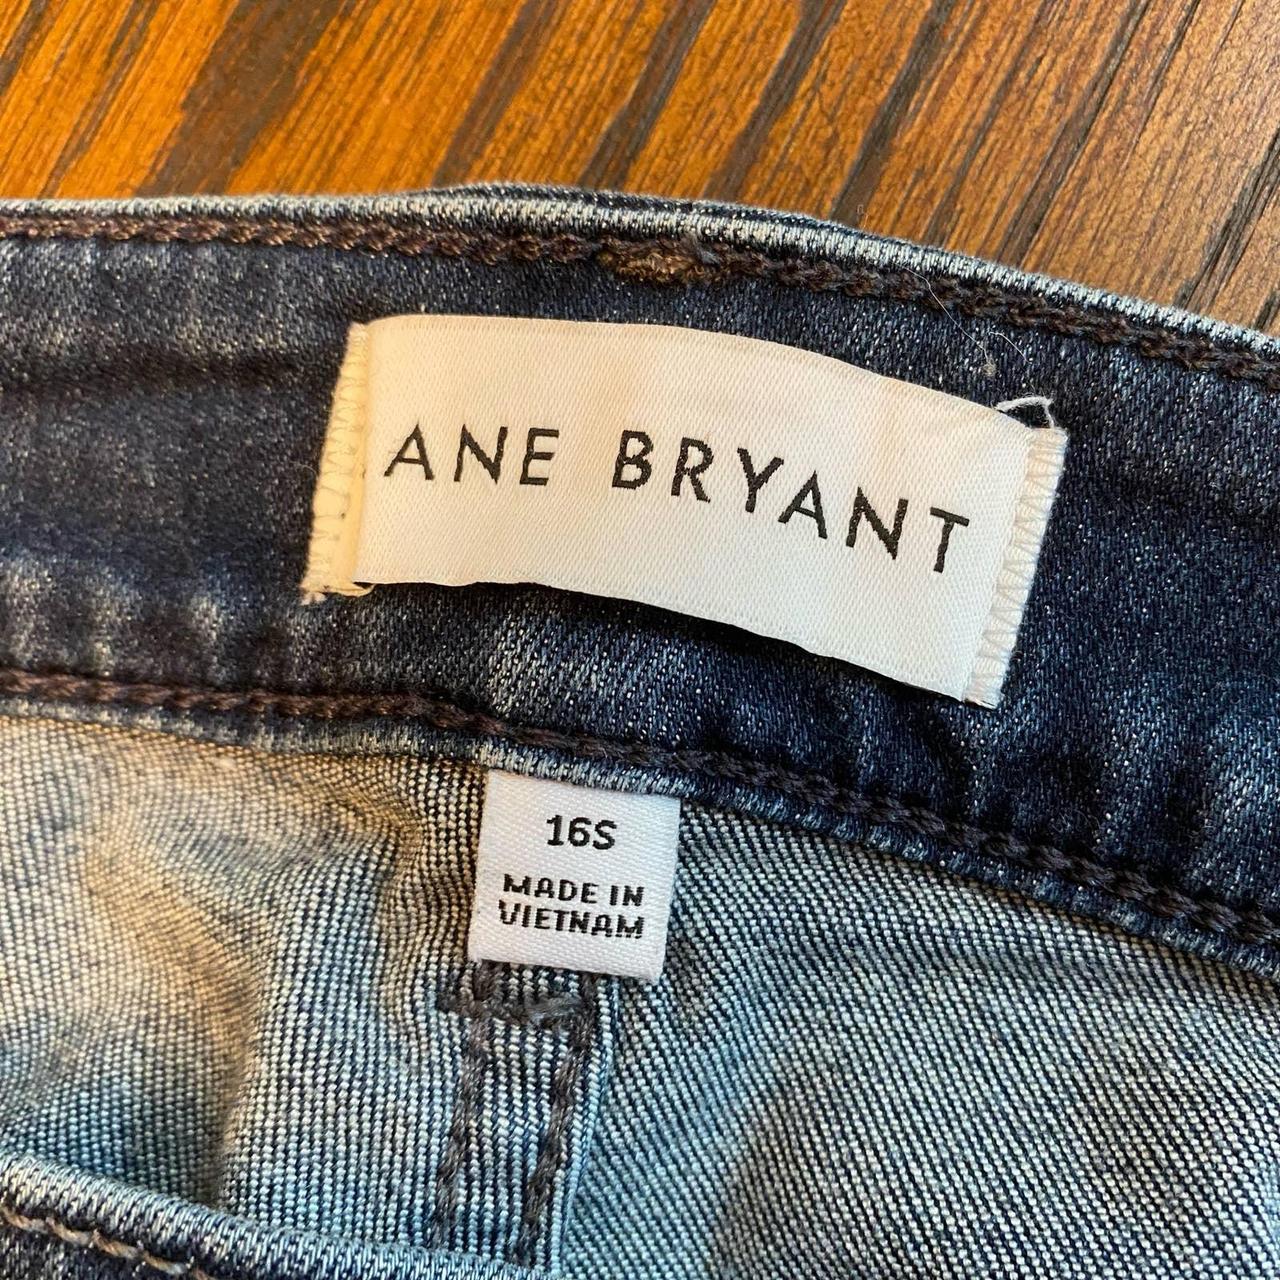 Lane Bryant signature fit boyfriend jeans. Has the - Depop